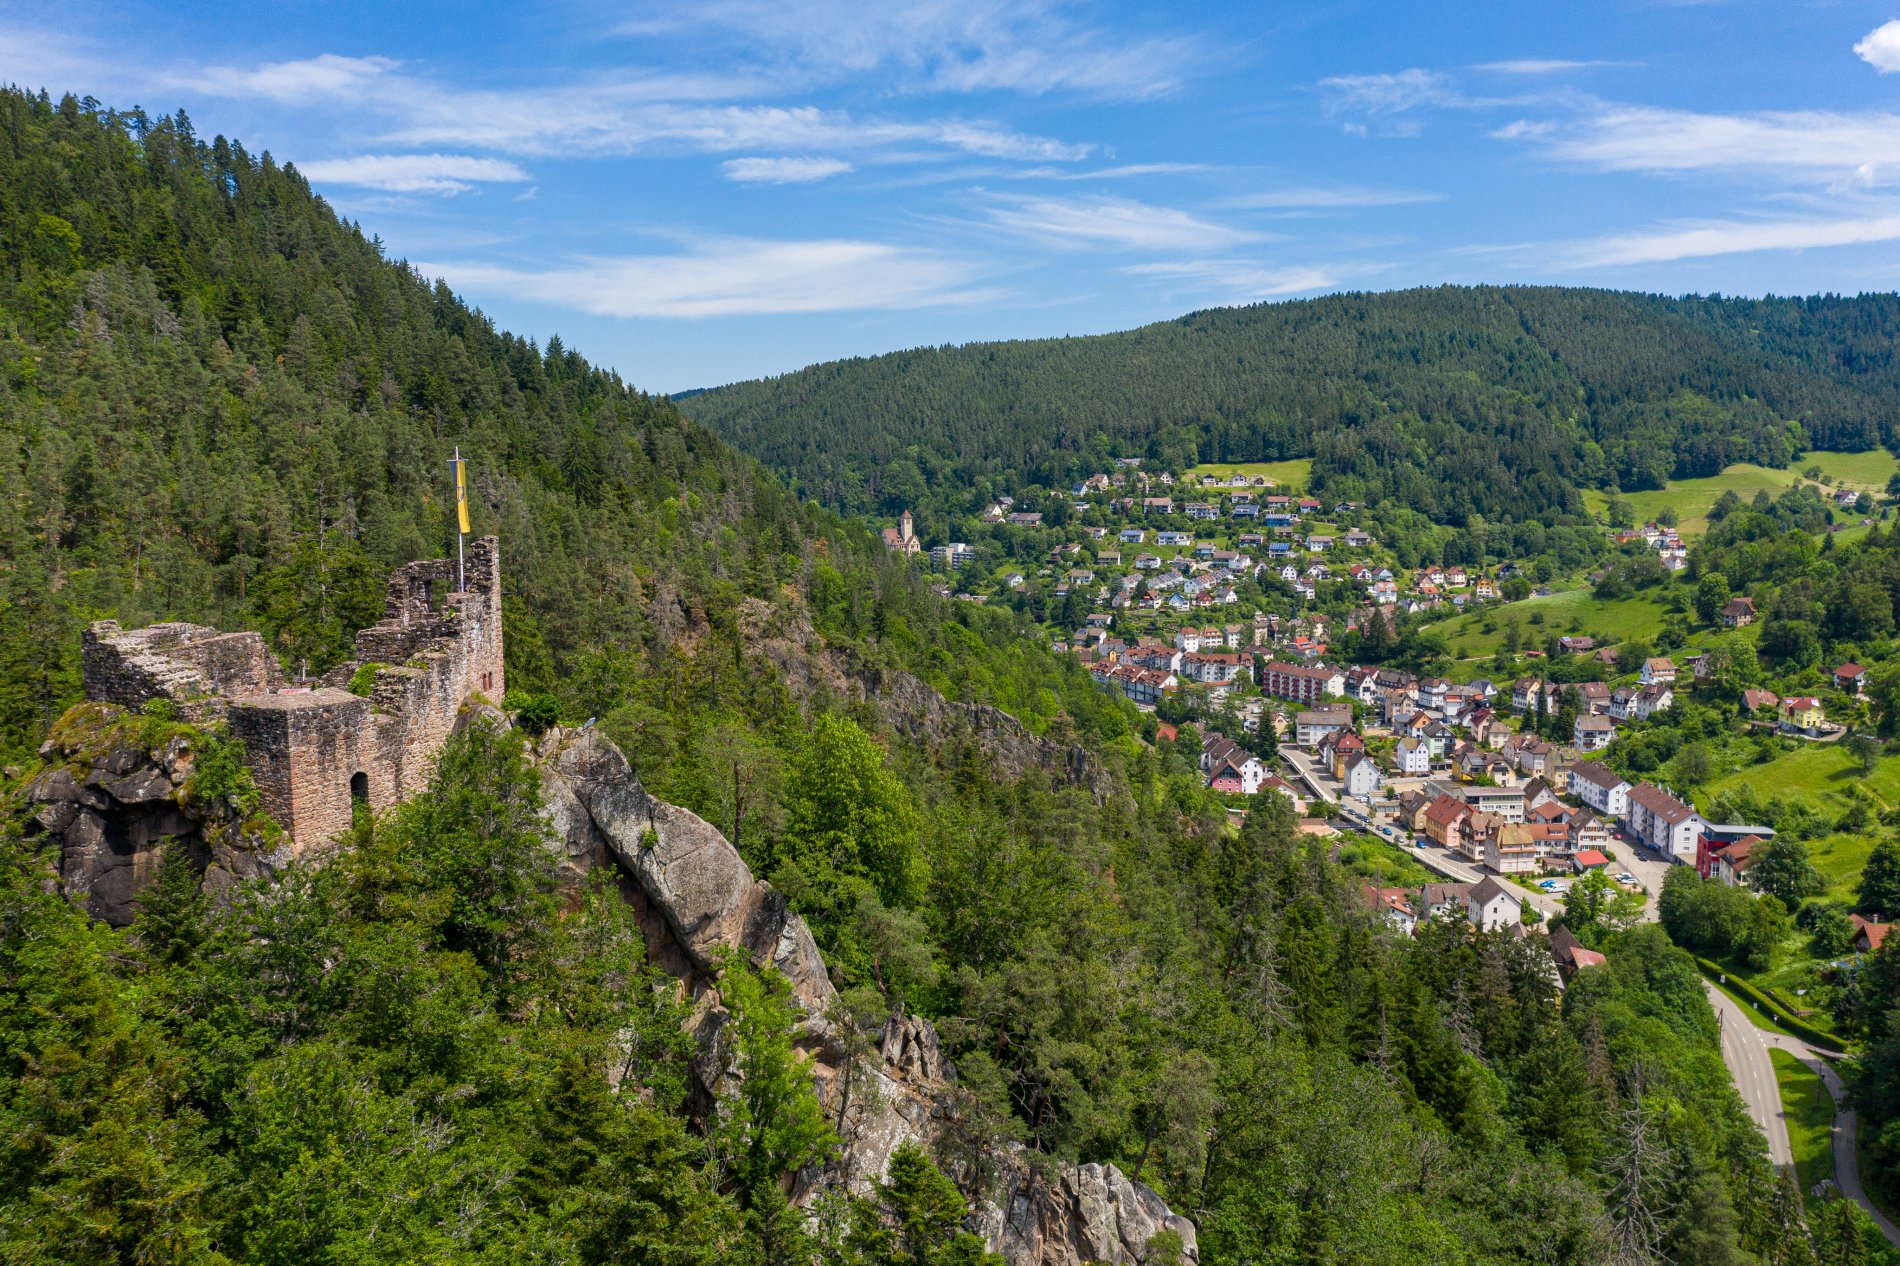 View of Falkenstein Castle Ruin